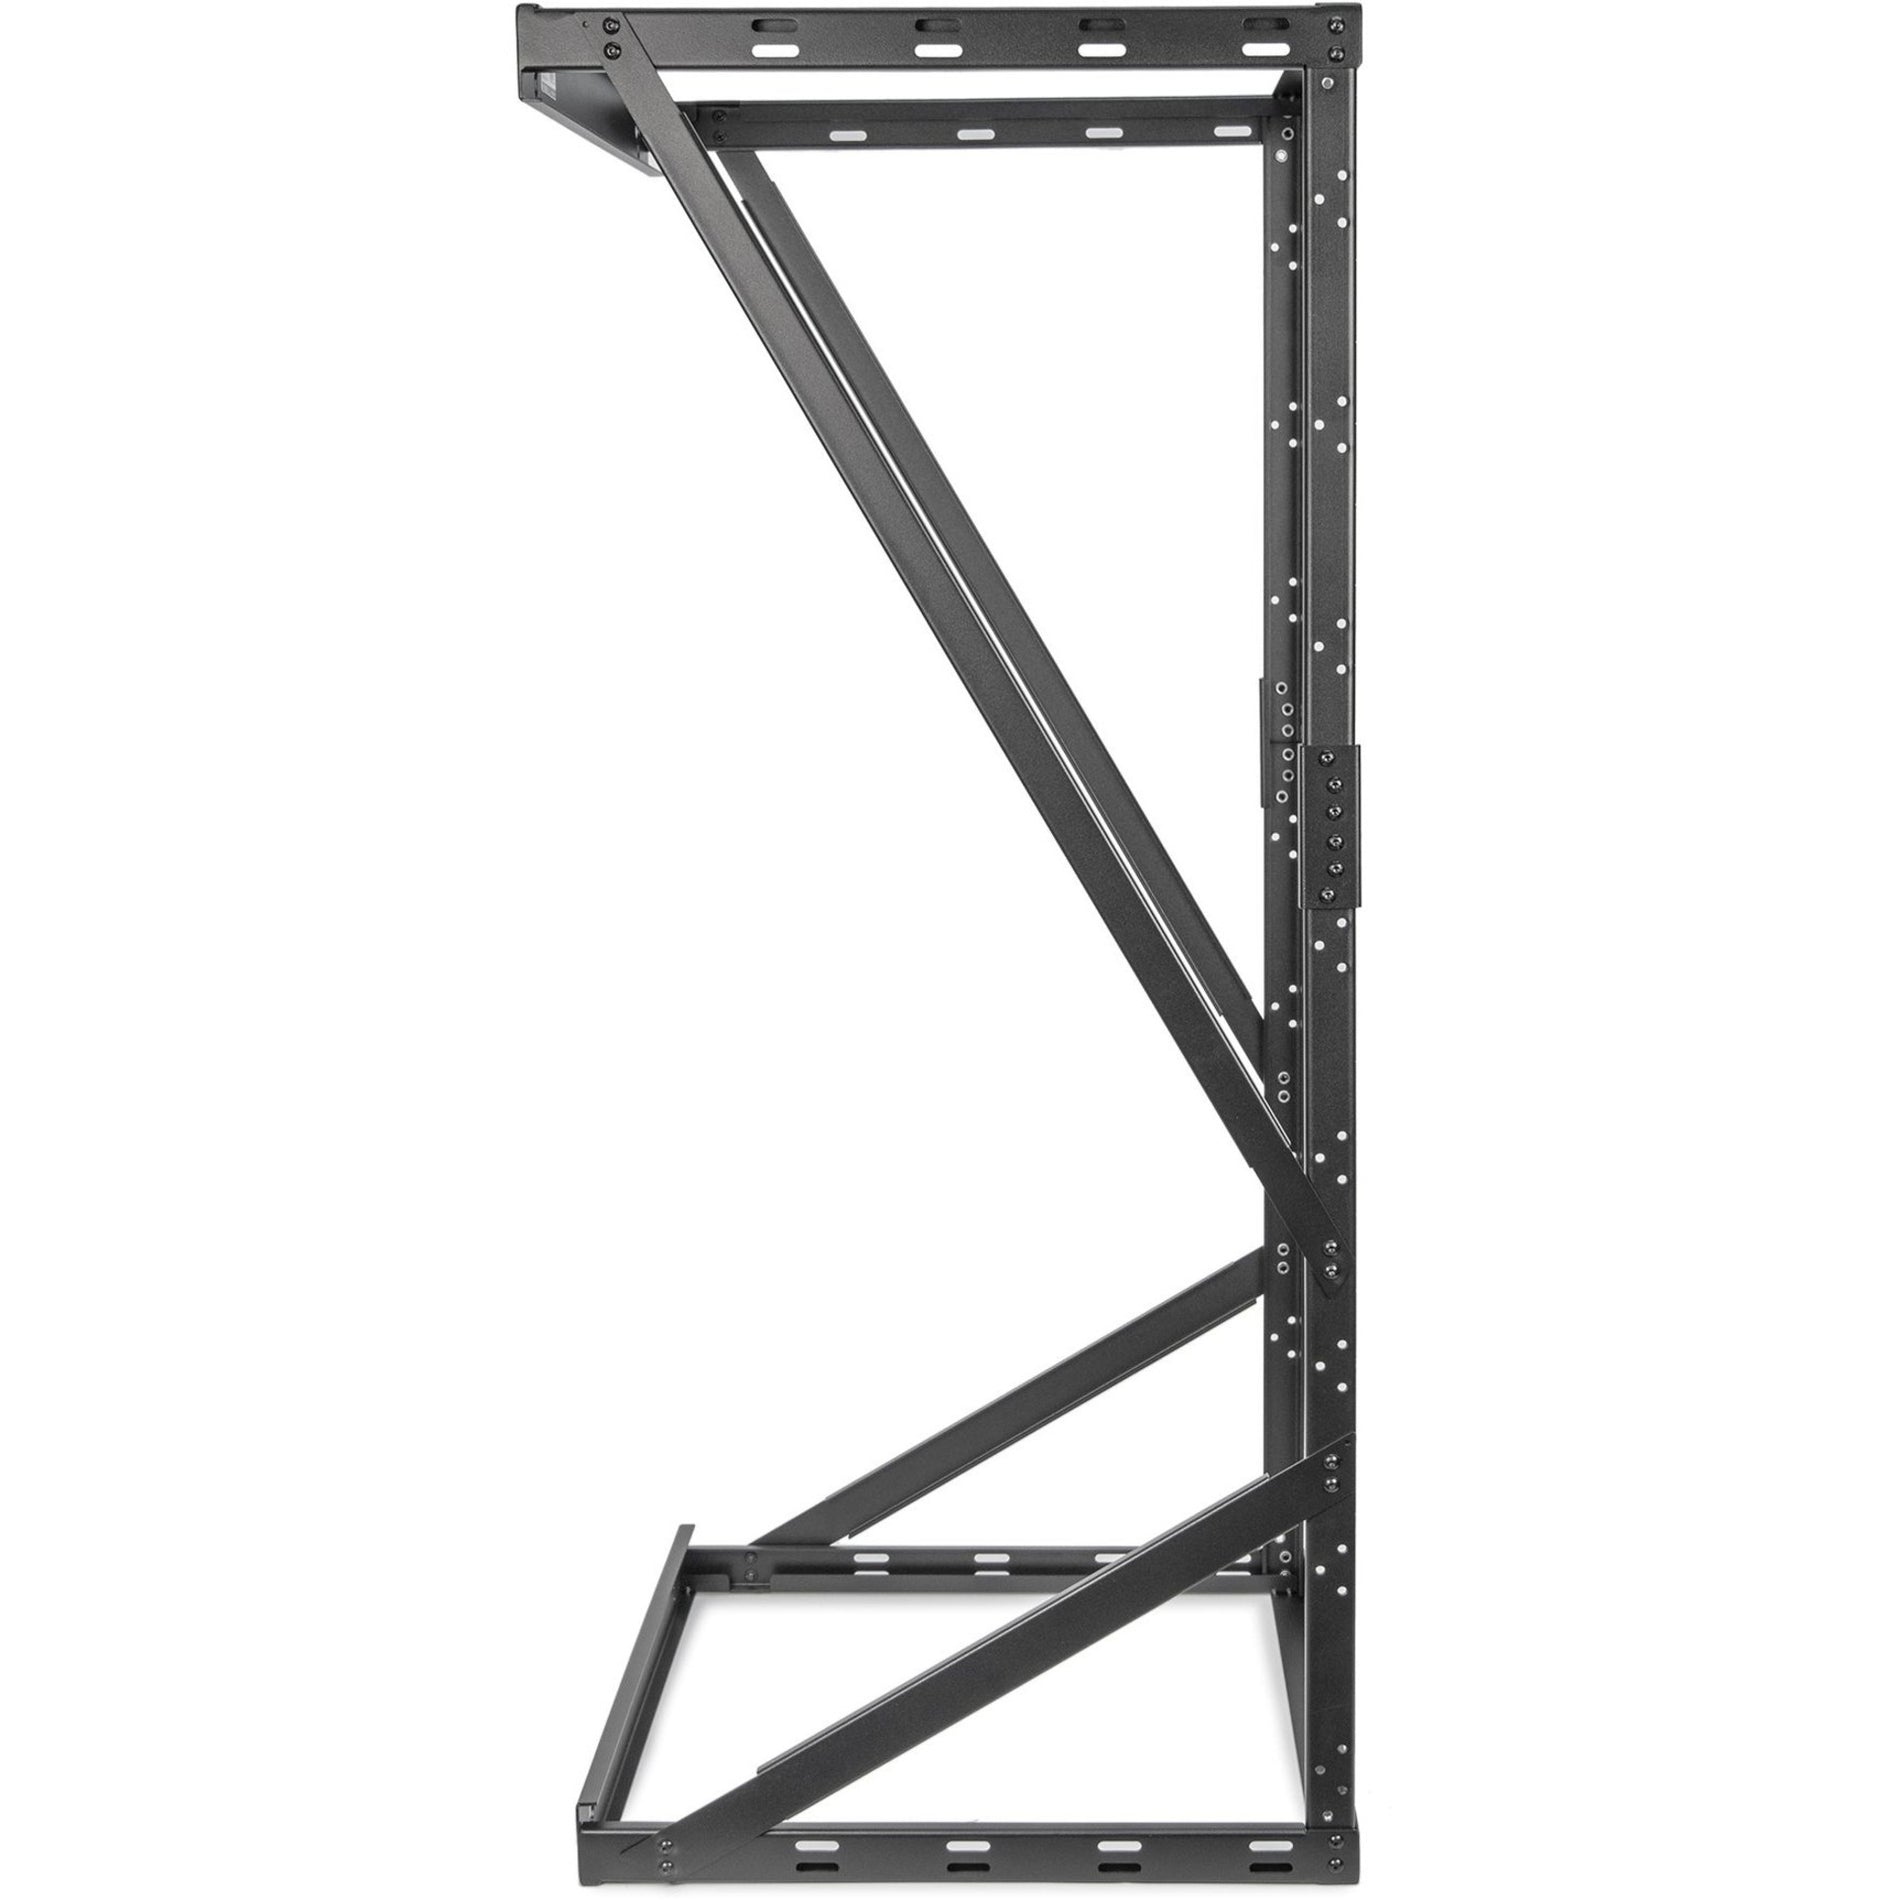 Rocstor Y10E041-B1 SolidRack Wall Mount Open Rack Frame Cabinet, Heavy Duty, 22U, 150 lb Capacity